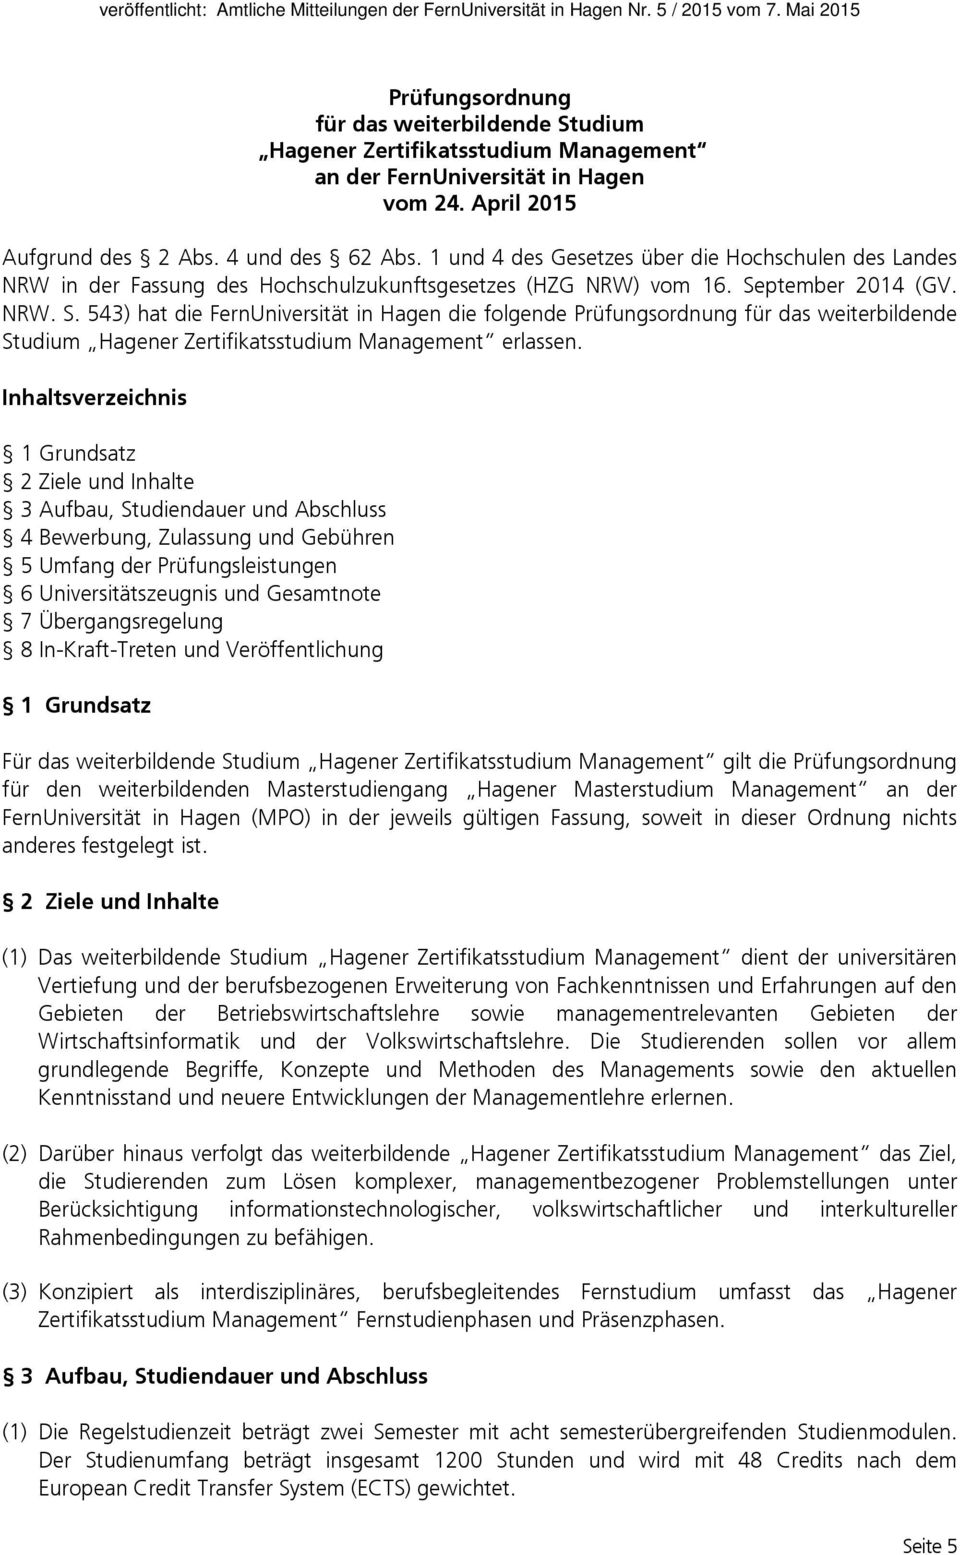 ptember 2014 (GV. NRW. S. 543) hat die FernUniversität in Hagen die folgende Prüfungsordnung für das weiterbildende Studium Hagener Zertifikatsstudium Management erlassen.